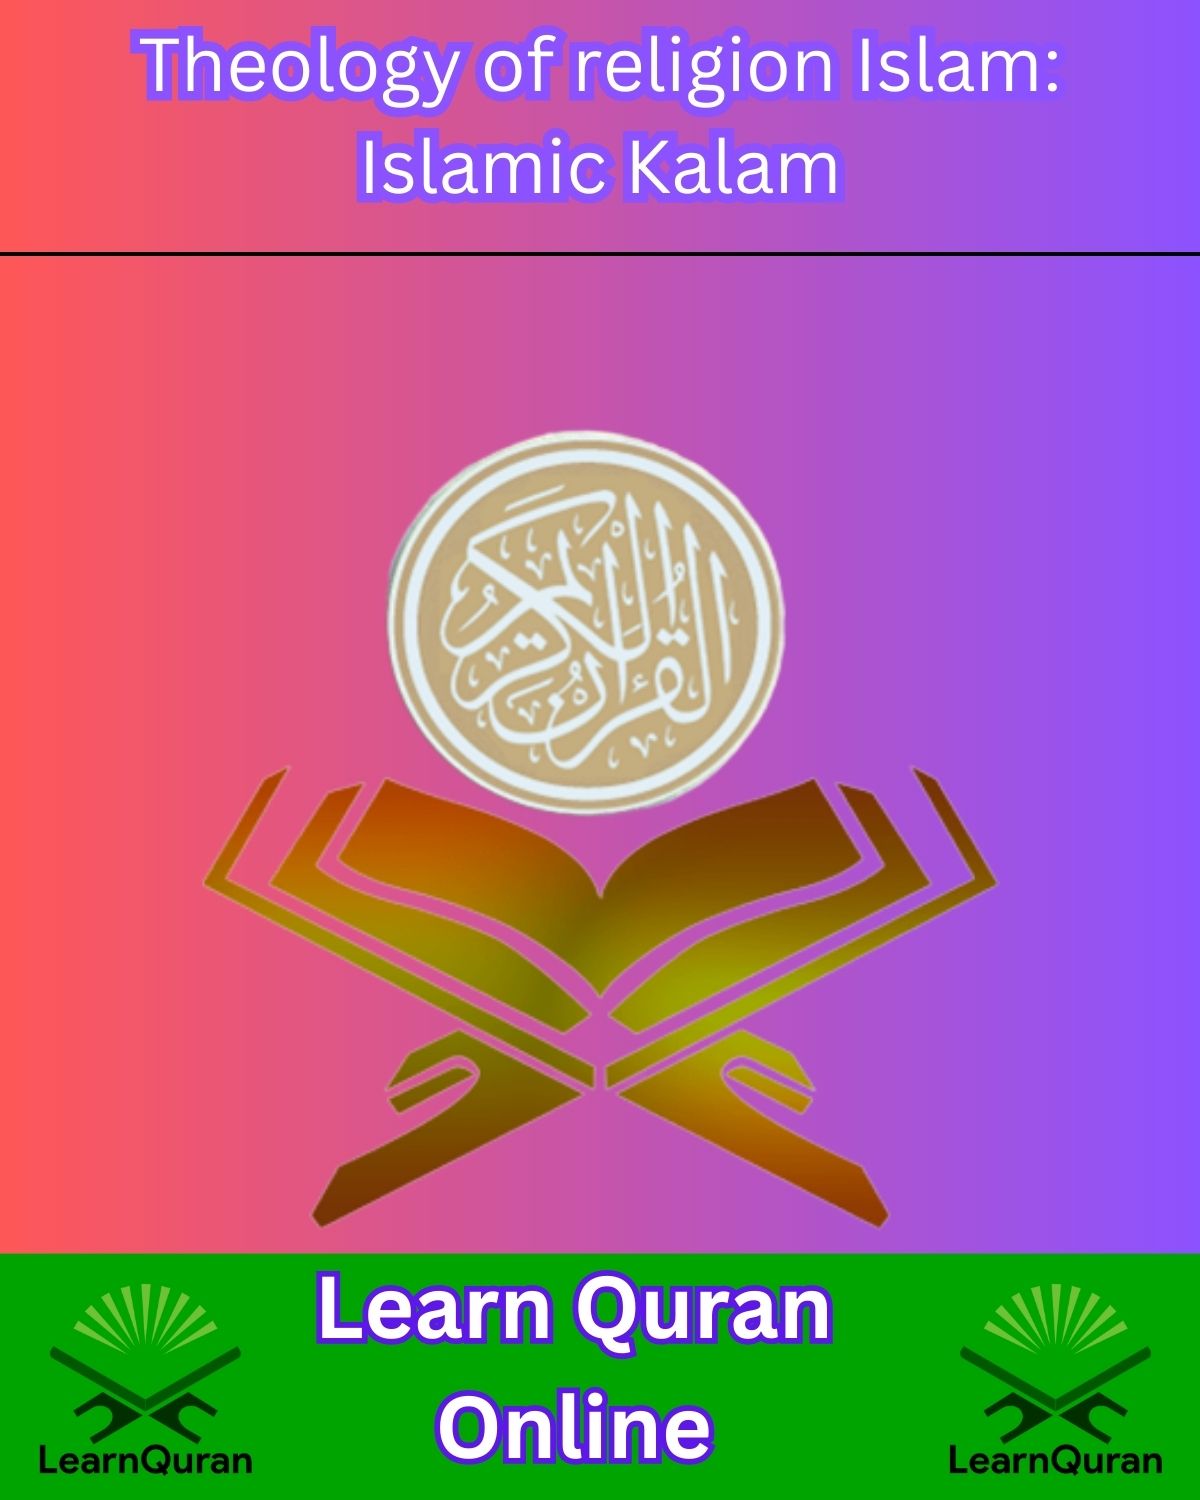 Islamic Kalam